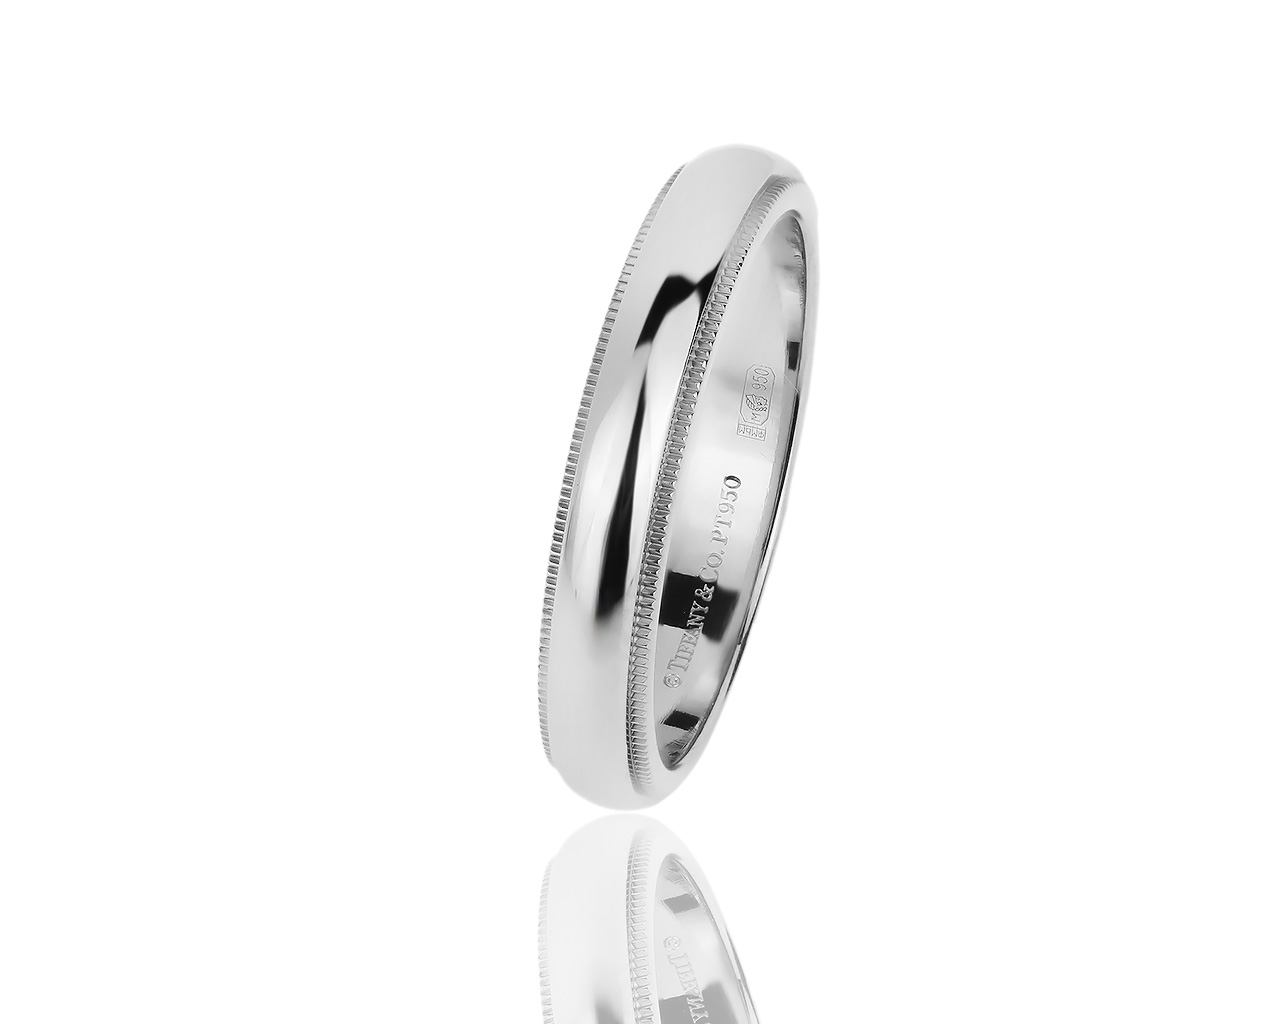 Стильное платиновое кольцо Tiffany&Co Milgrain